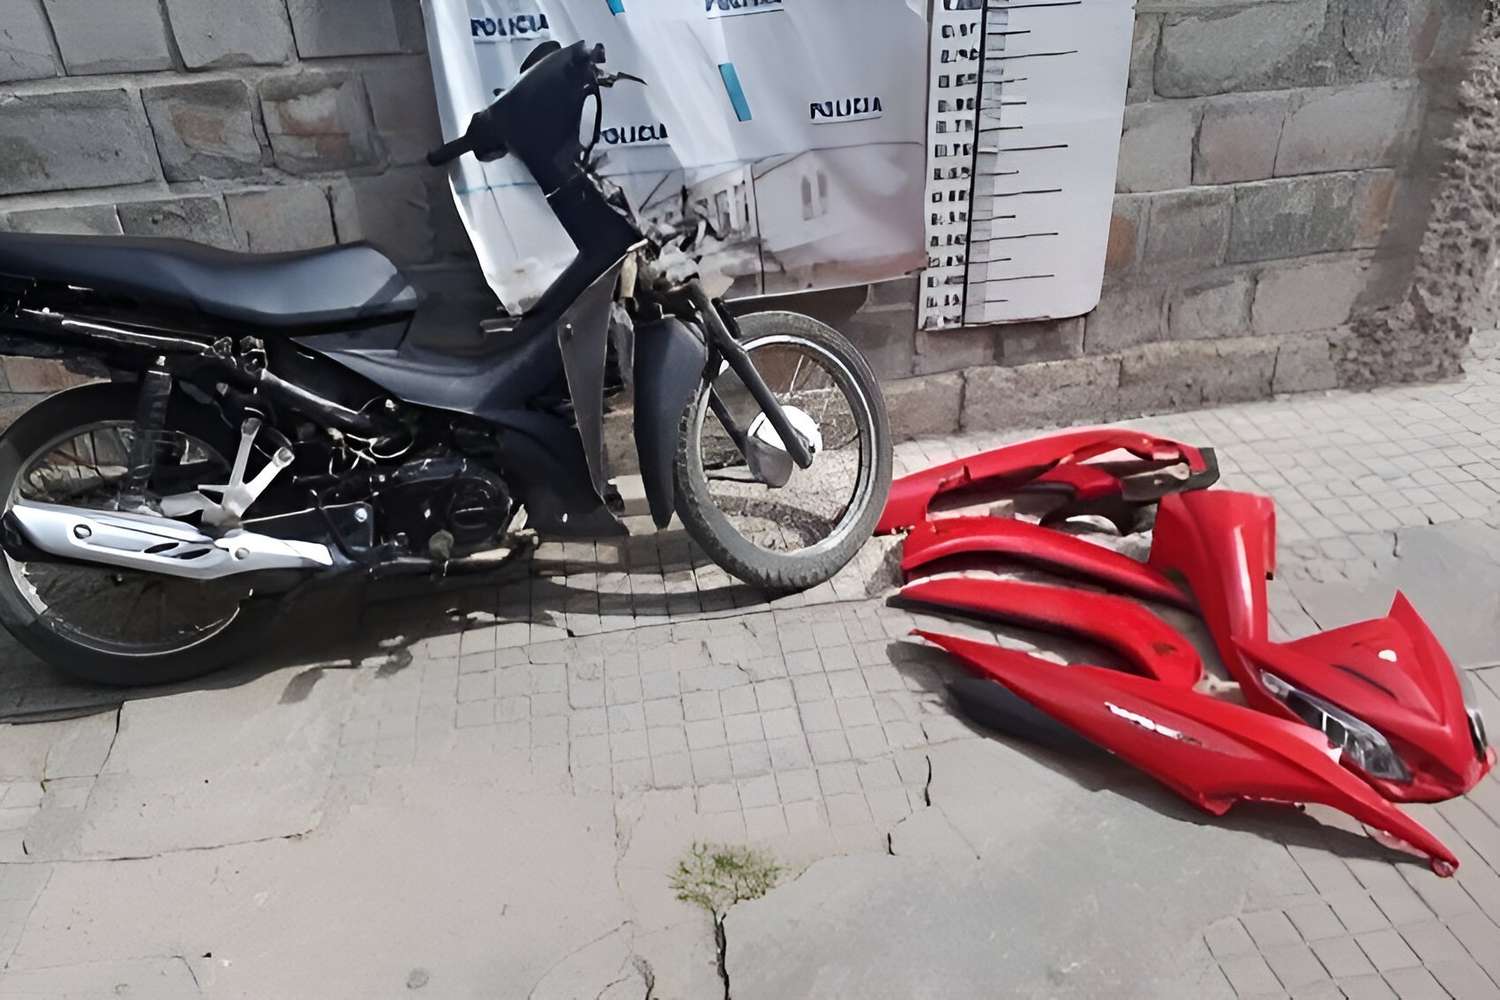 Dos jóvenes detenidos cuando desarmaban una moto que acababan de robar